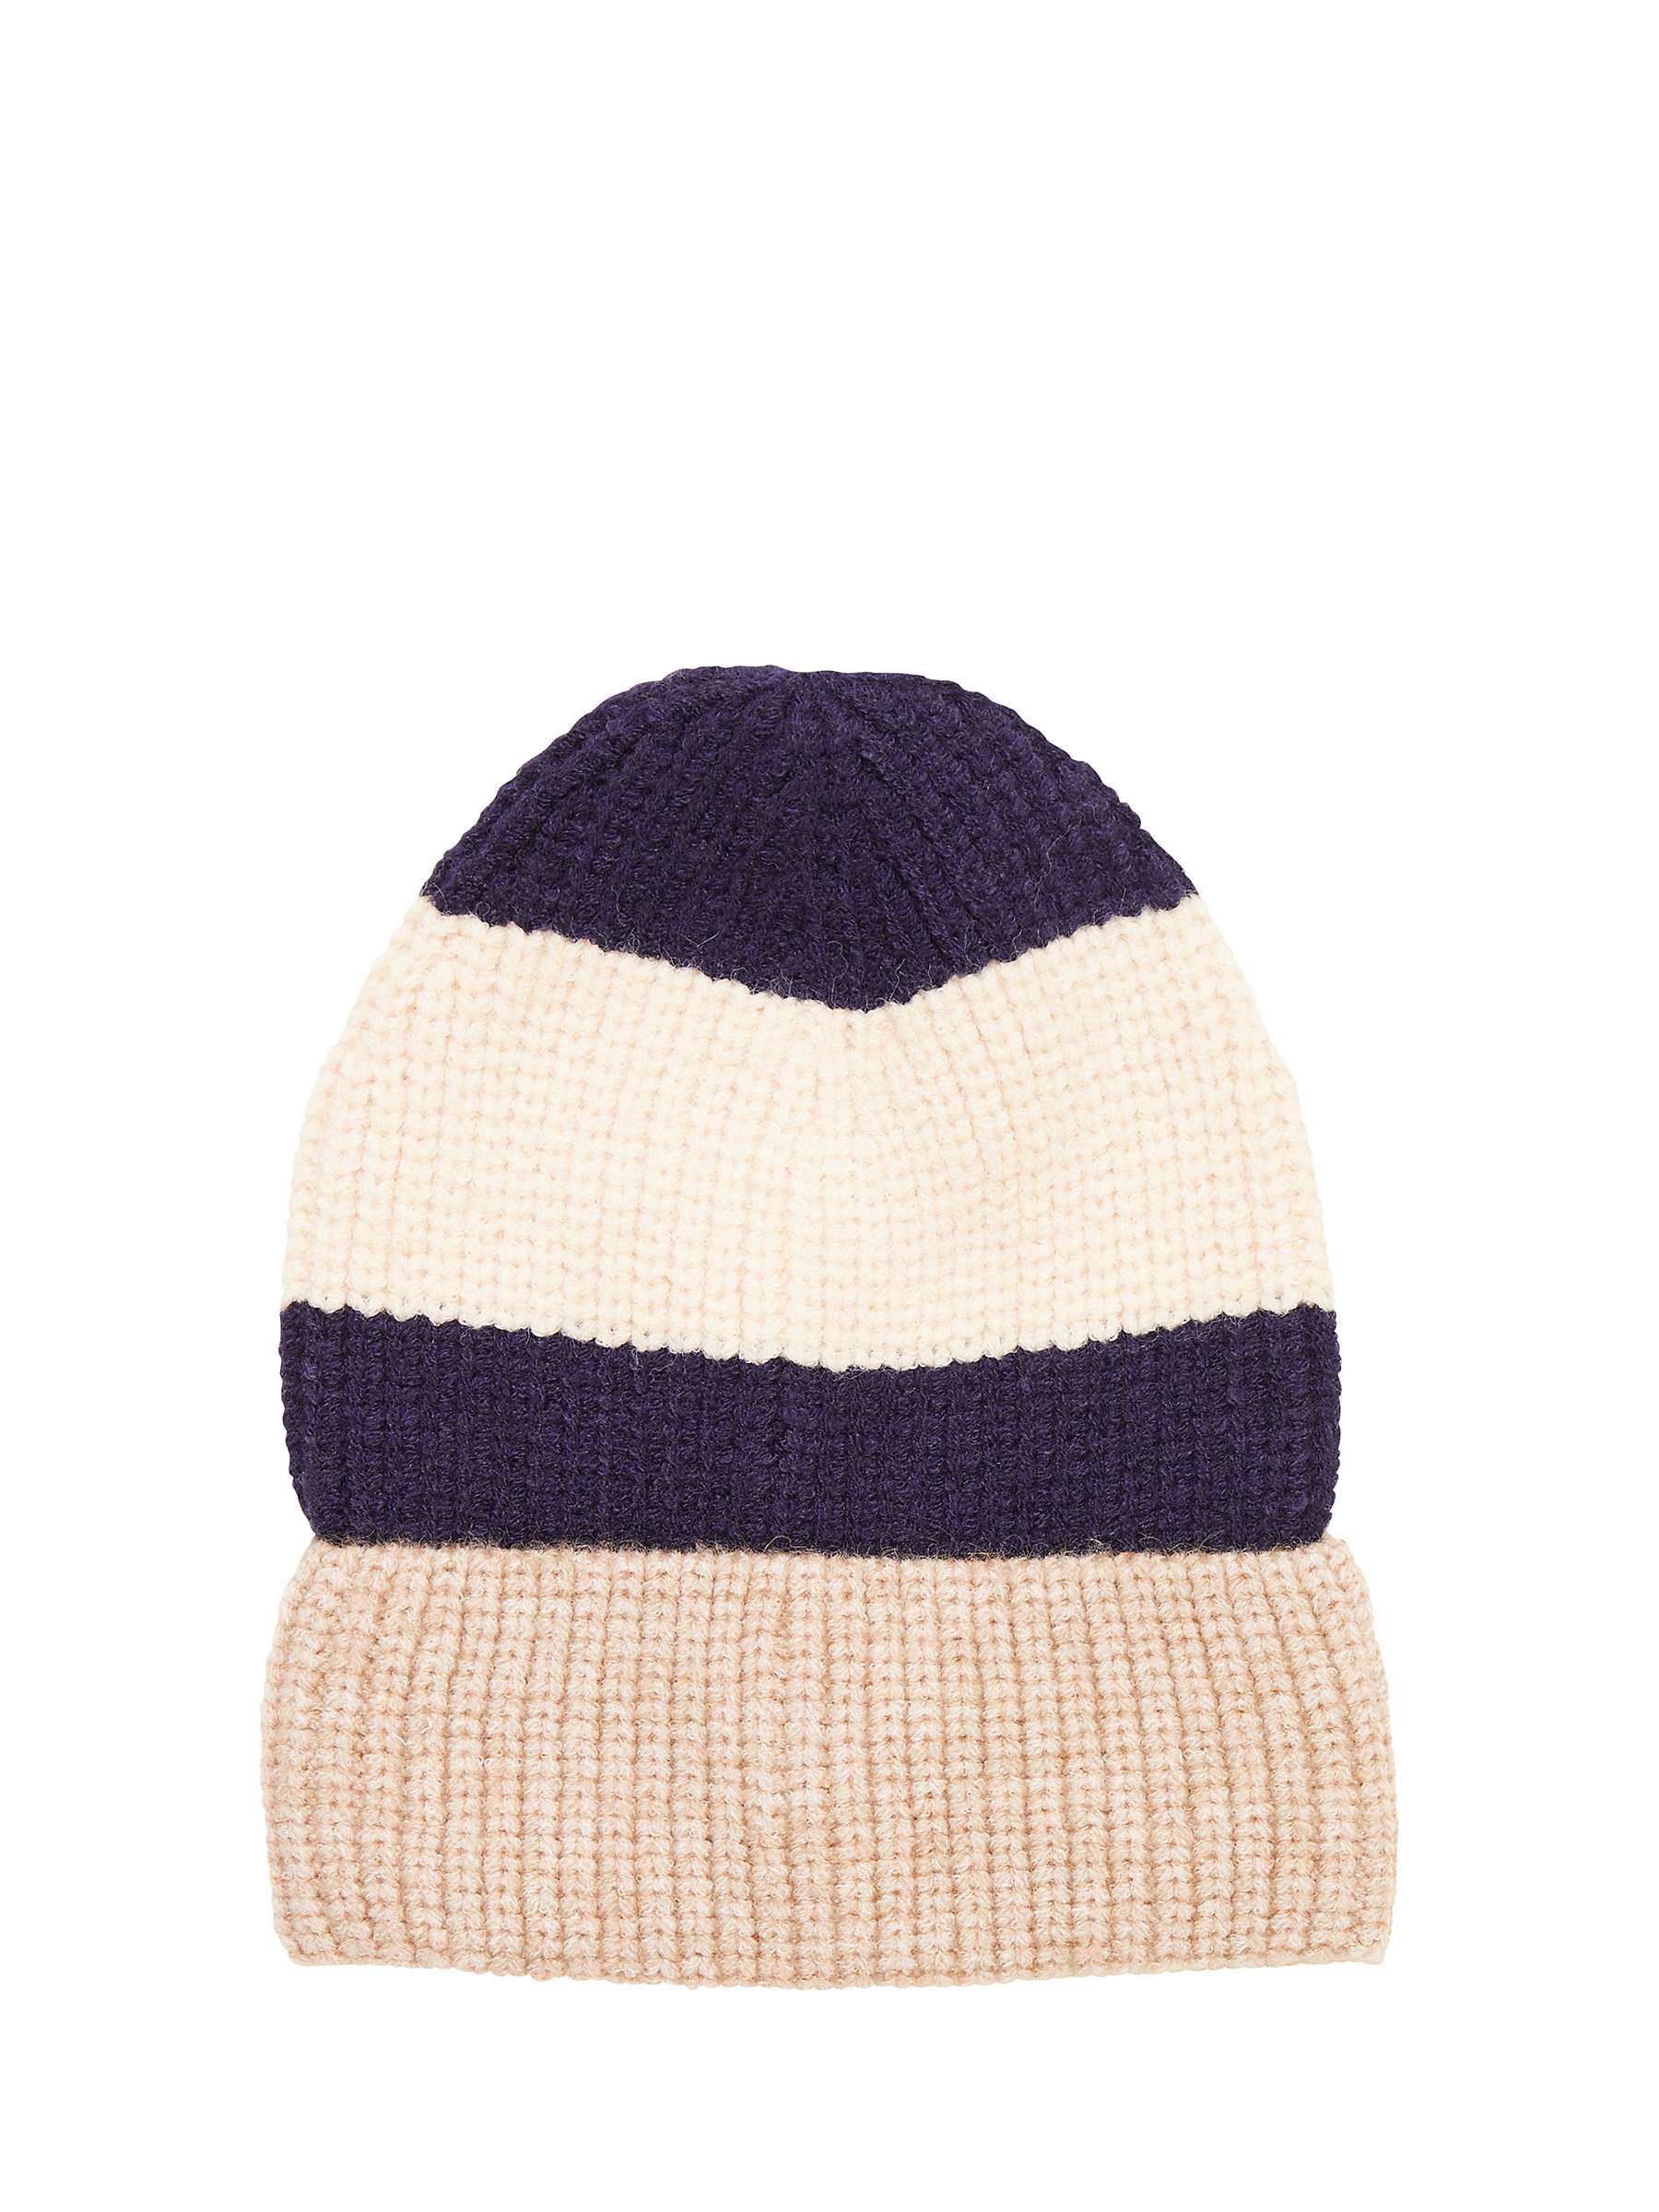 Buy Great Plains Tricolour Knit Hat, Multi Online at johnlewis.com